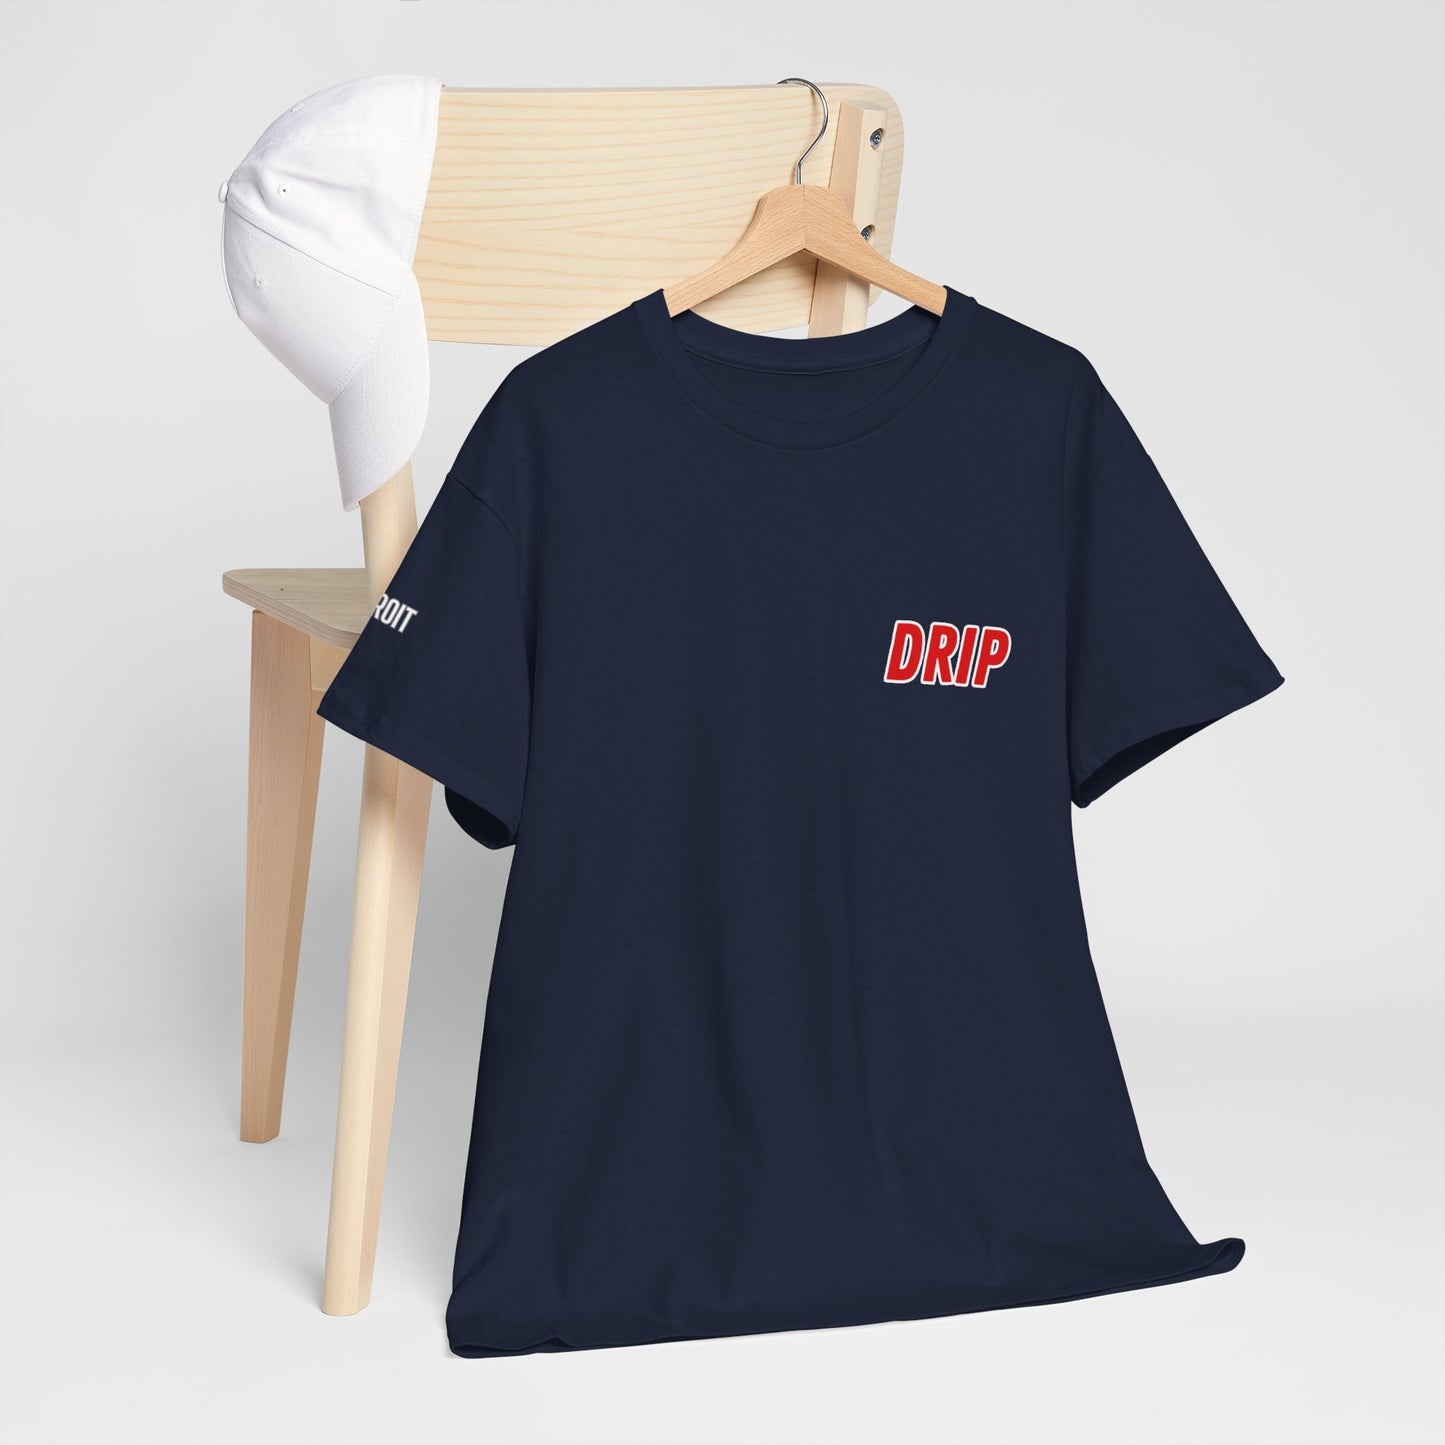 Unisex Heavy Cotton Graphic design (Detroit Drip) T-shirt